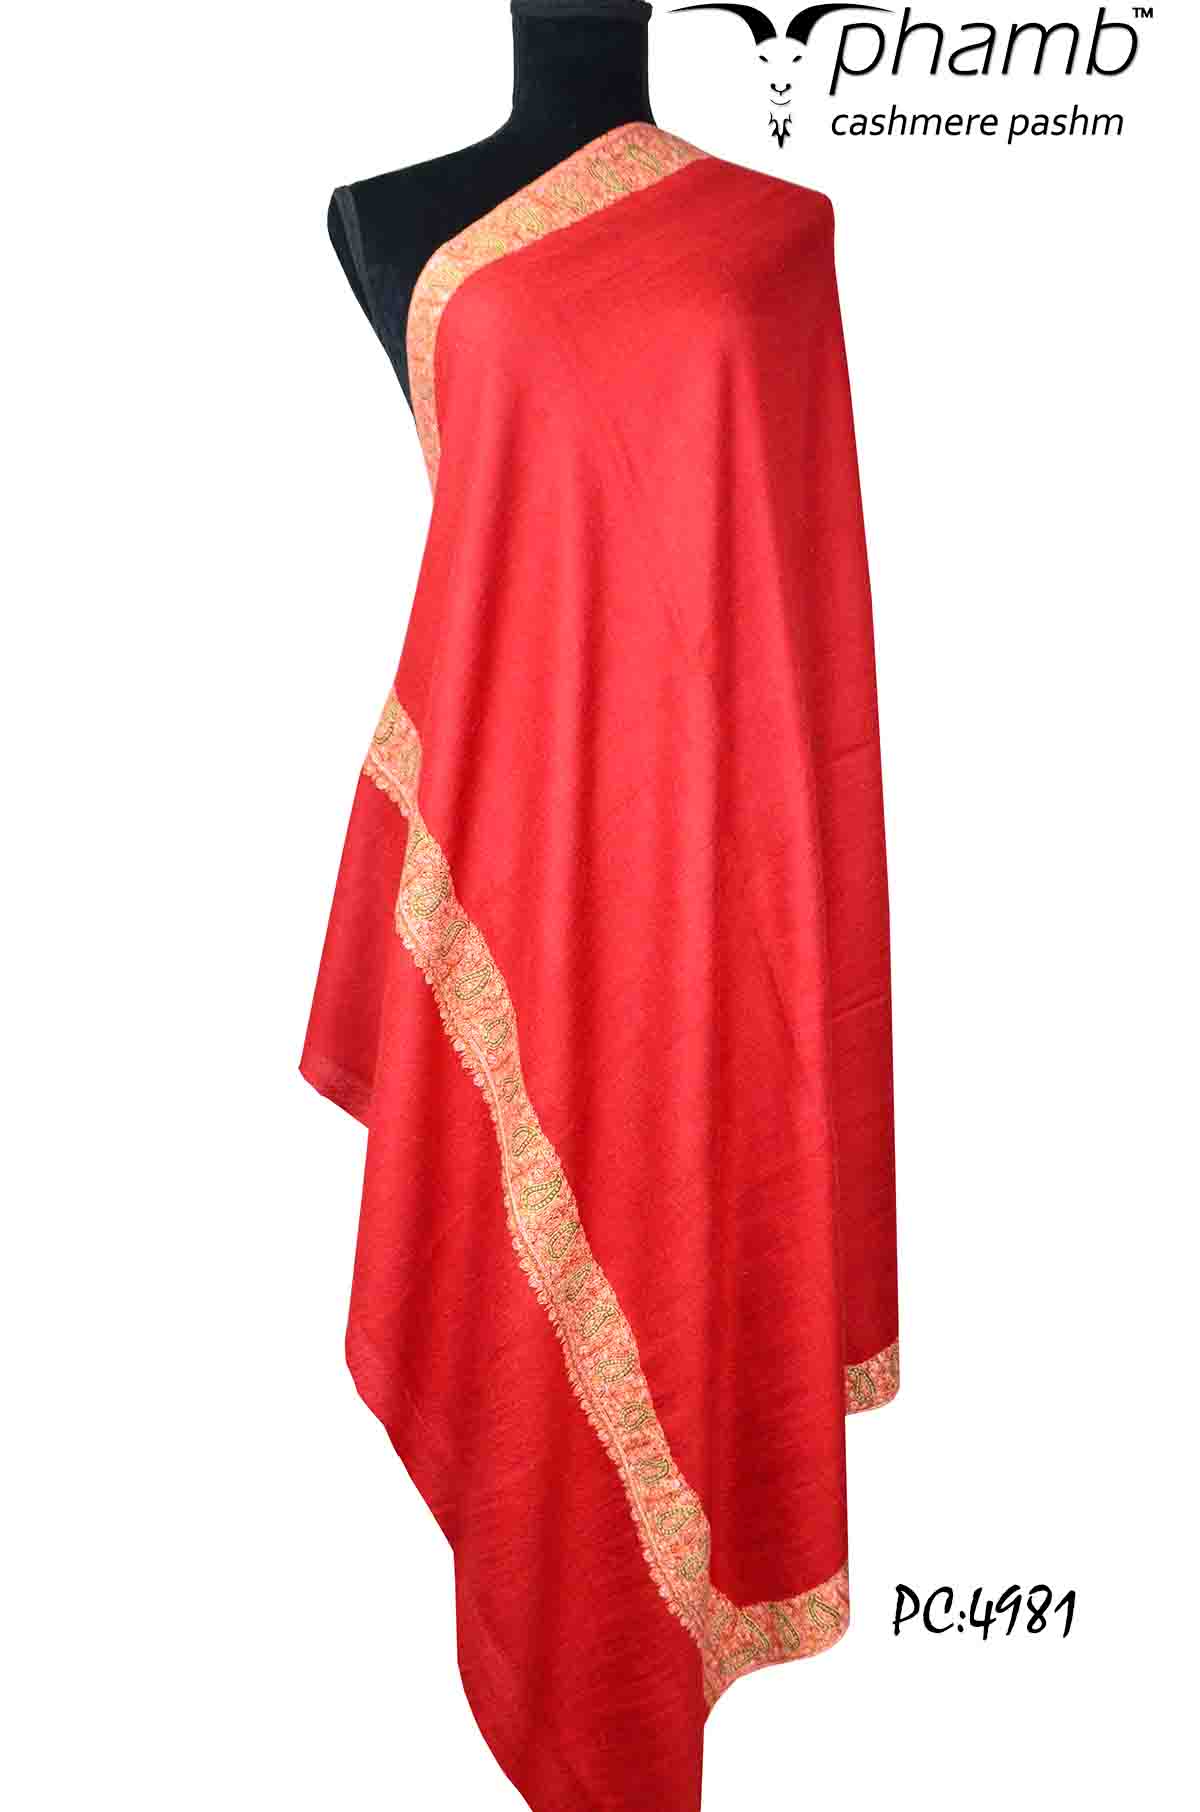 red sozni shawl - 4981